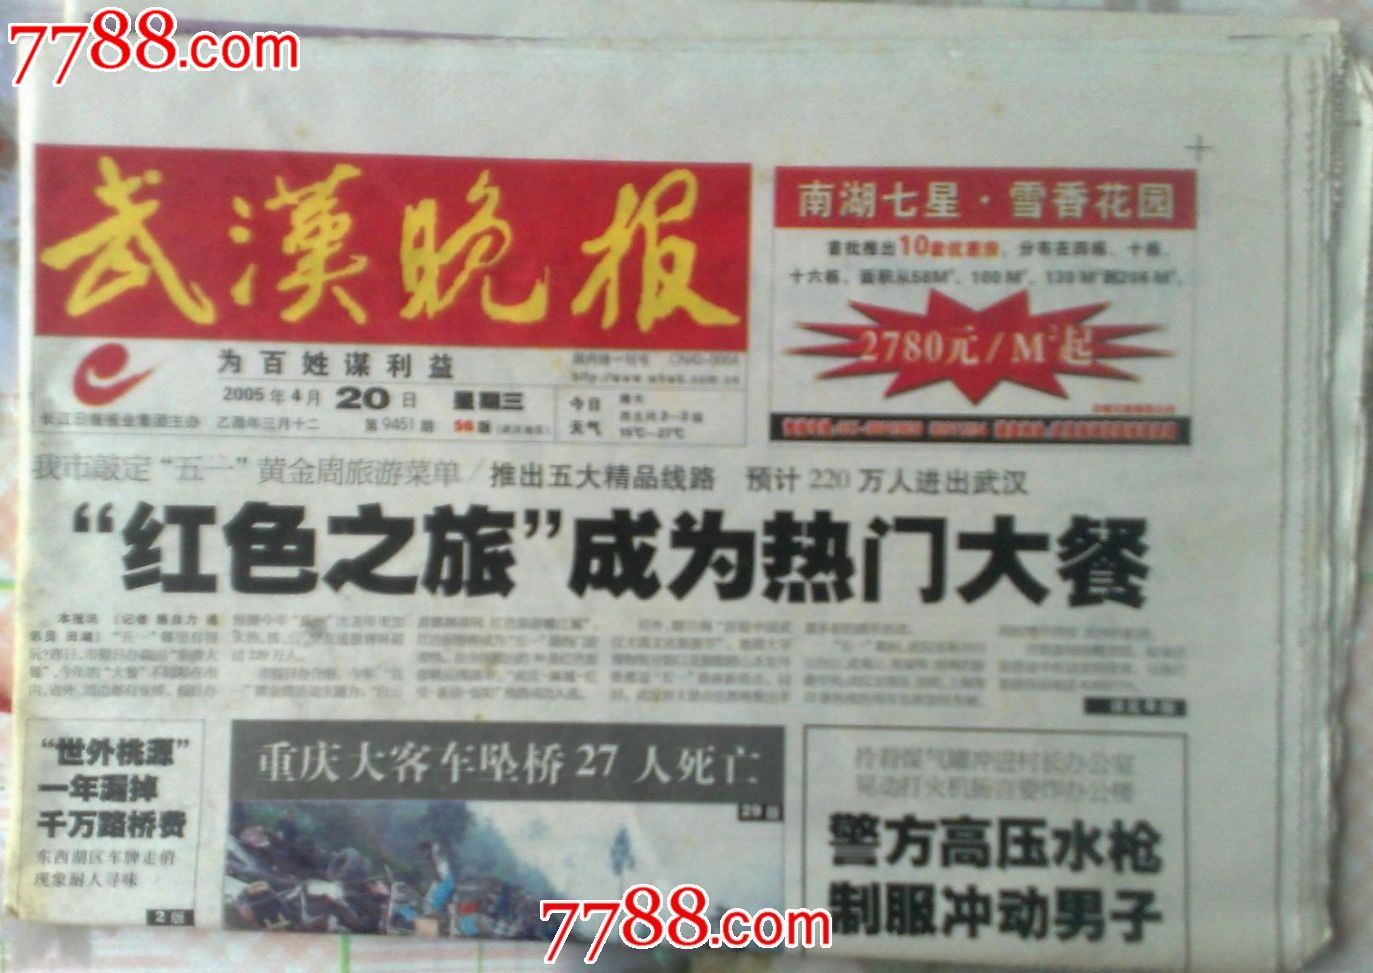 武汉晚报2005年4月20日红色之旅成为热门大餐